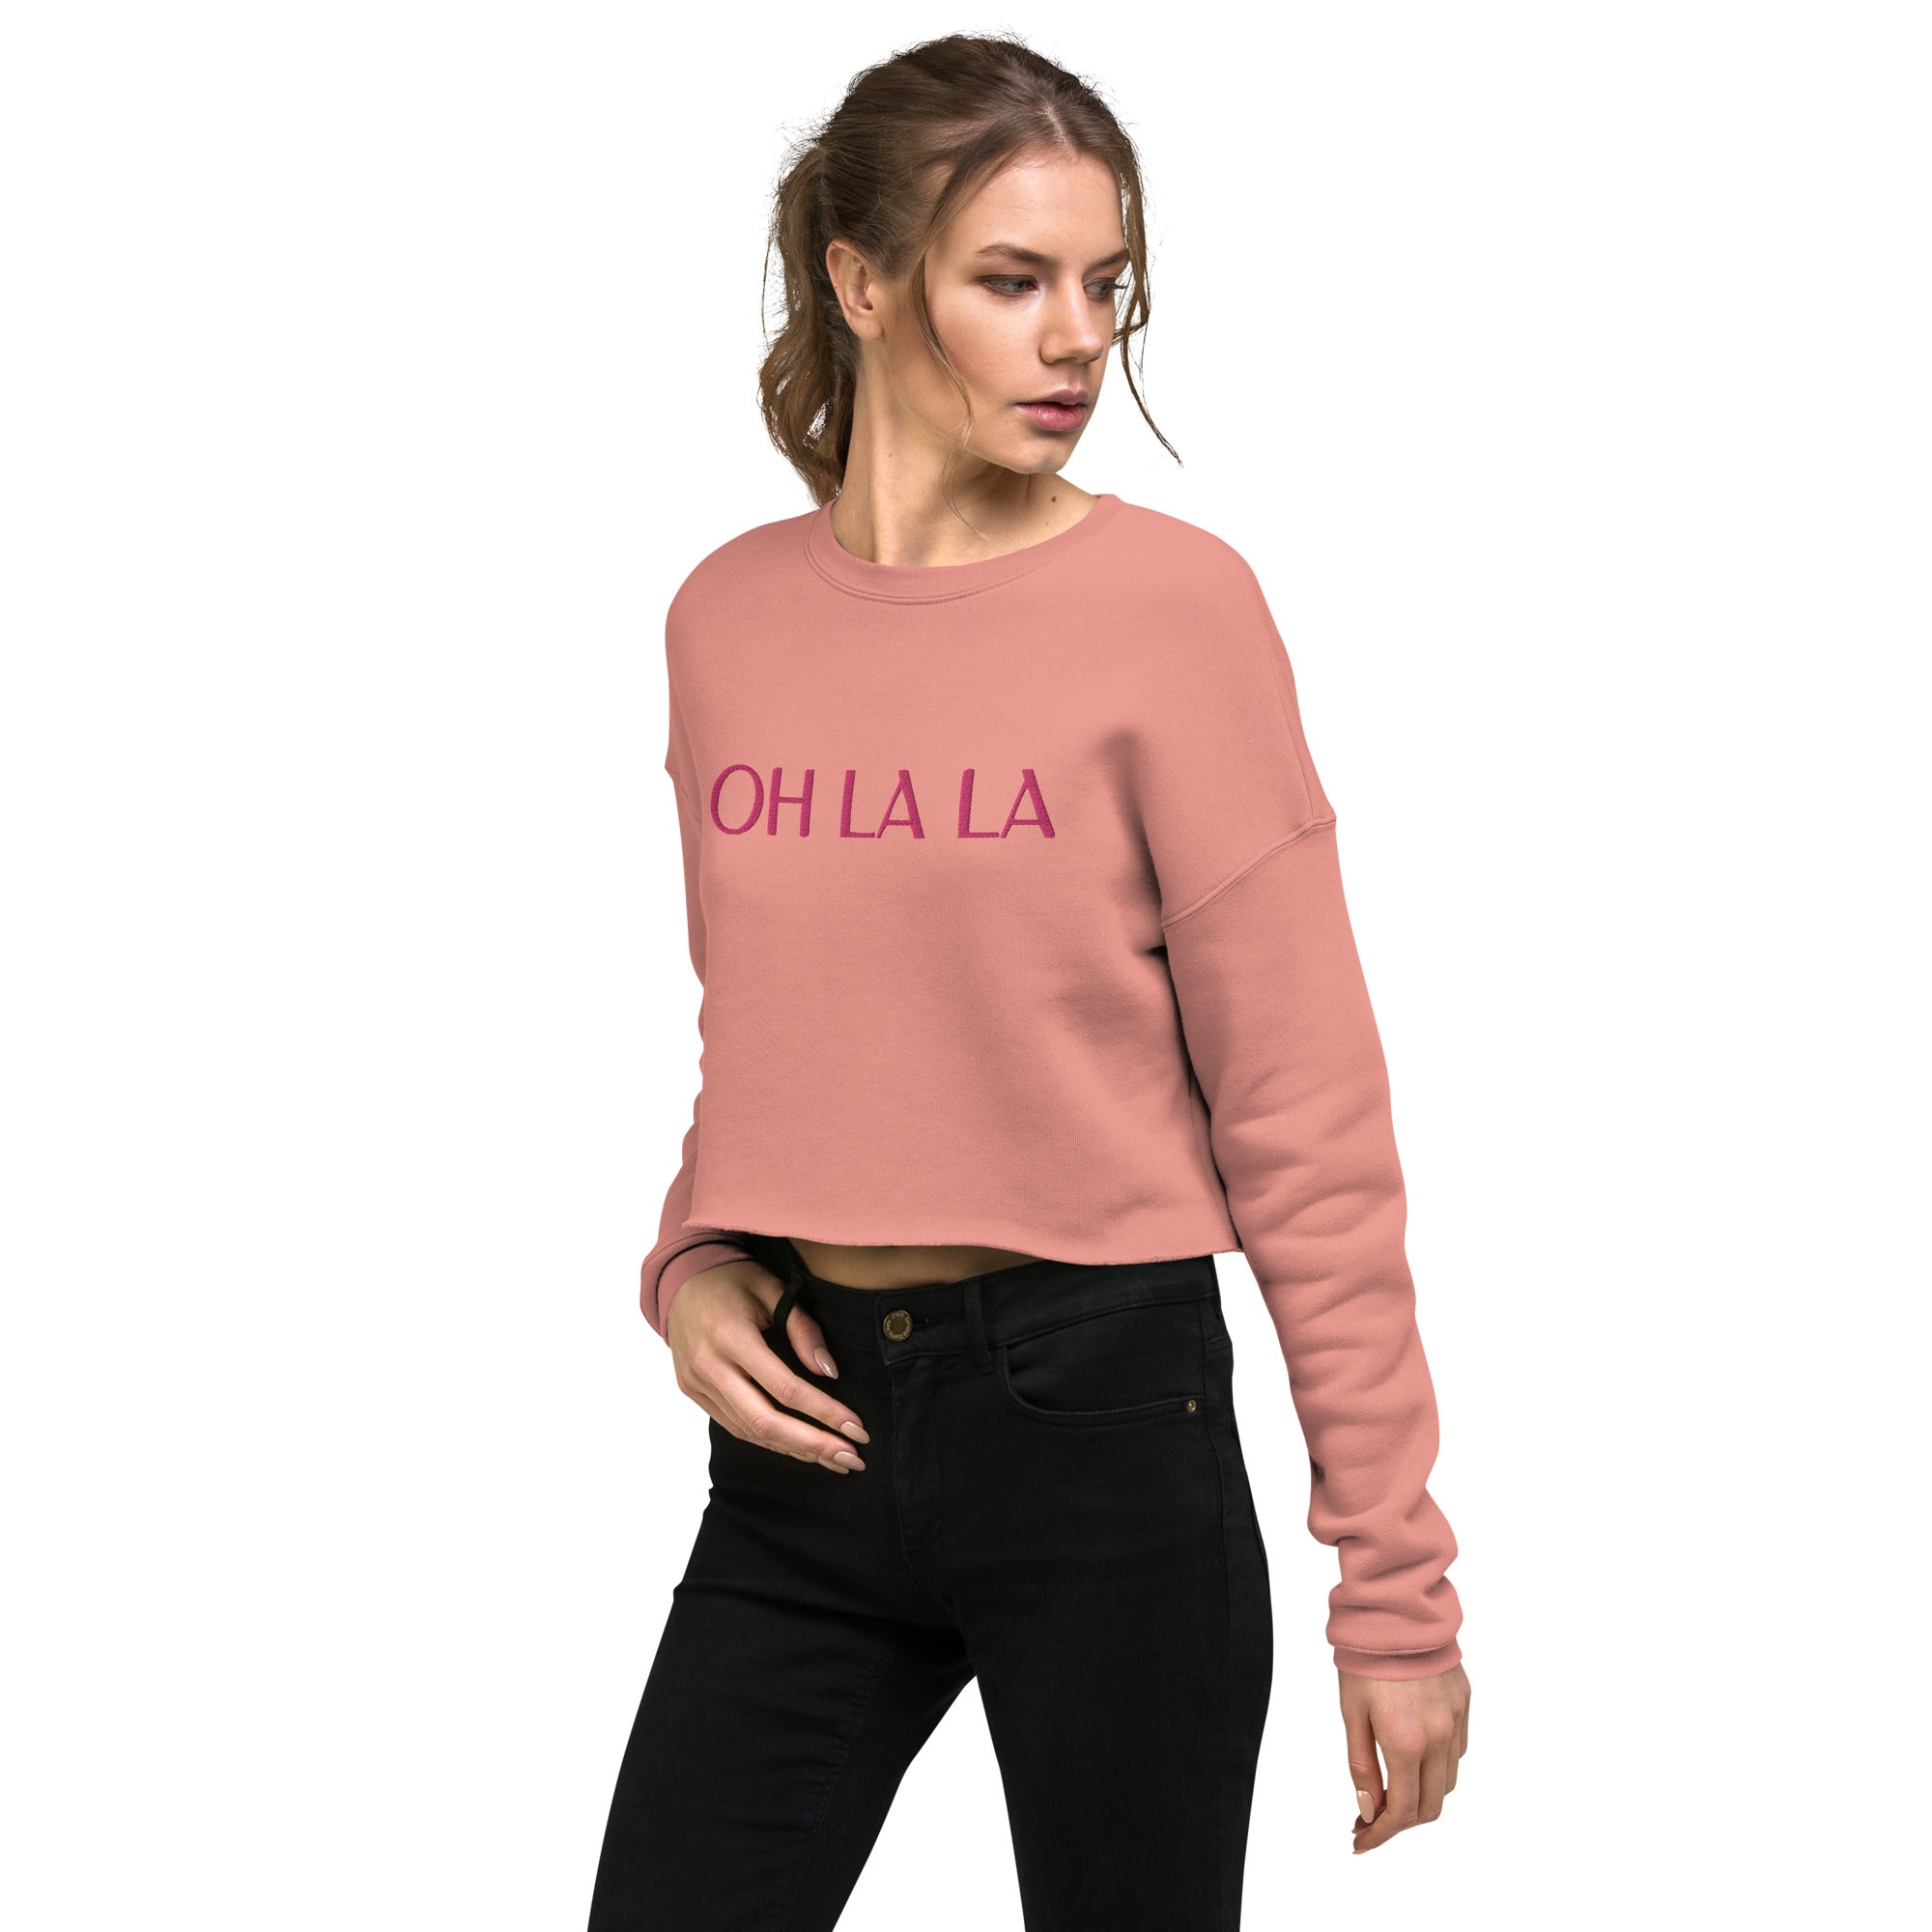 Oh la la pink women's cropped sweatshirt